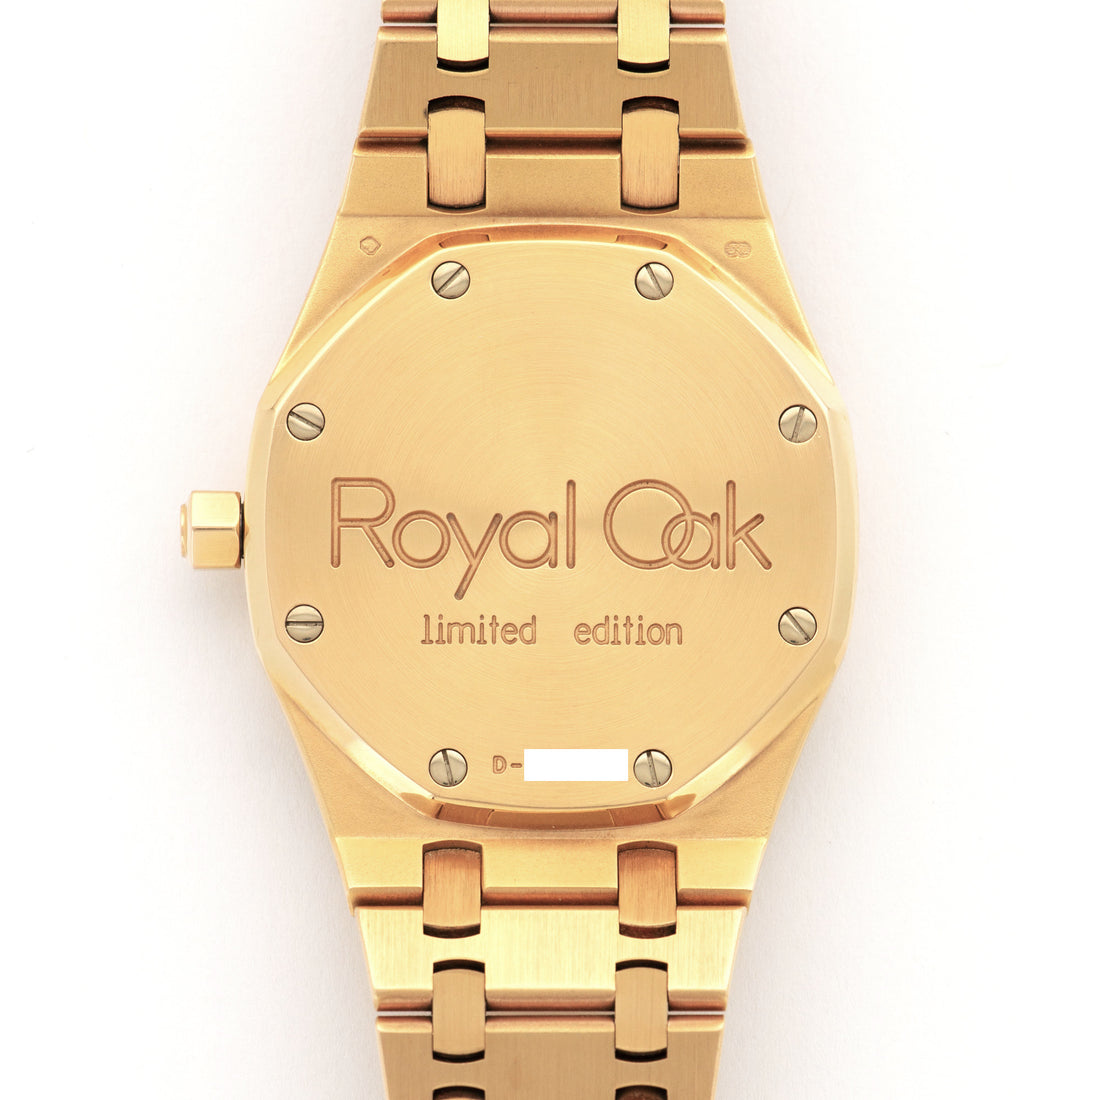 Audemars Piguet Rose Gold Royal Oak Nick Faldo Edition Watch